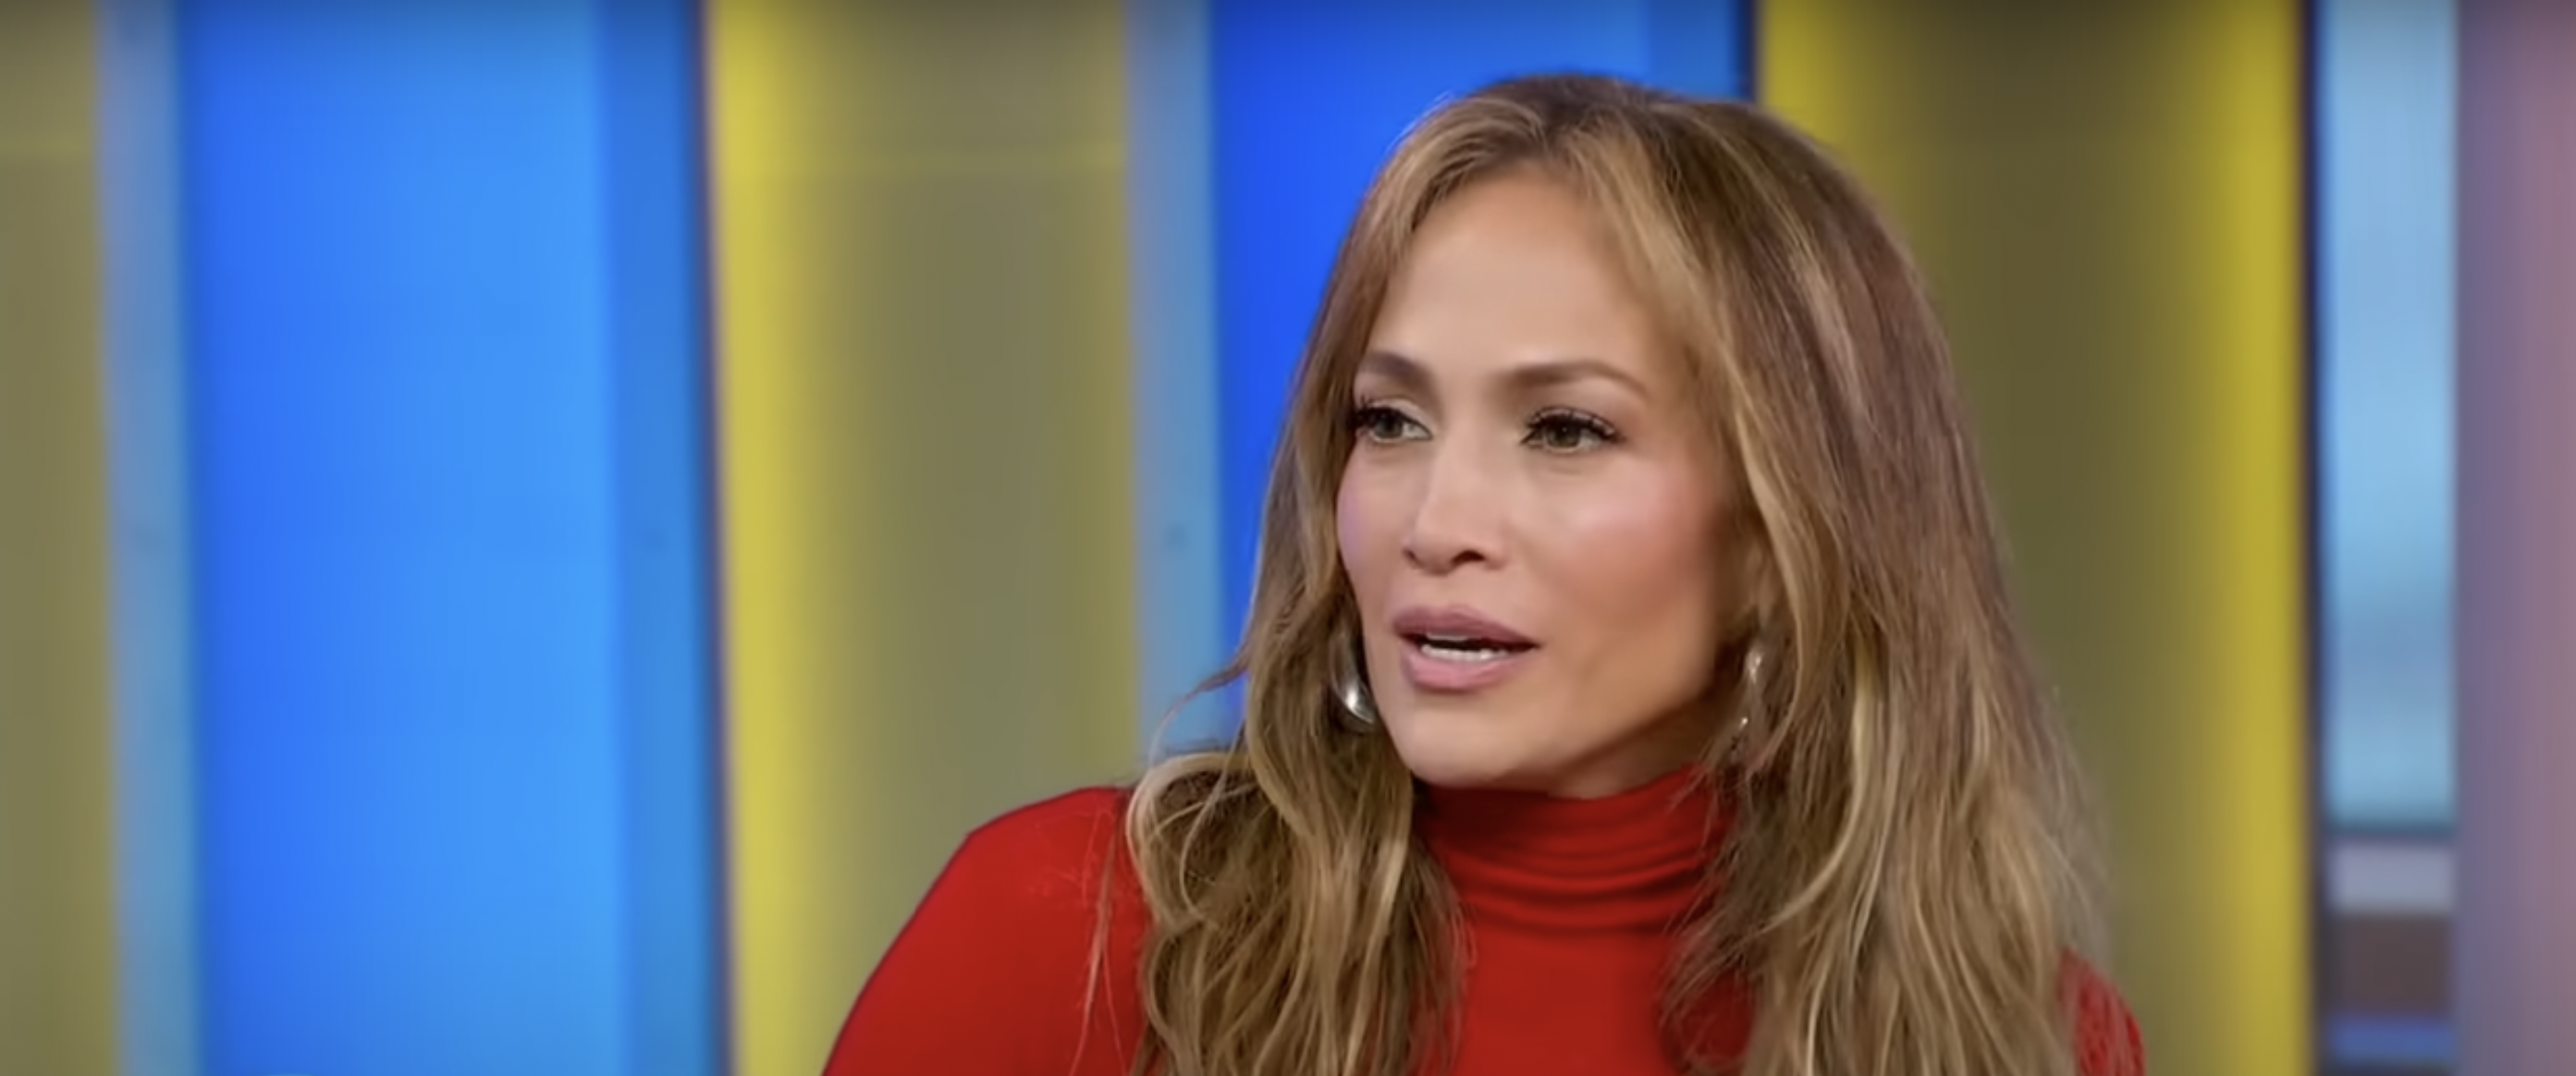 Jennifer Lopez and Ben Affleck Reportedly Set For Divorce